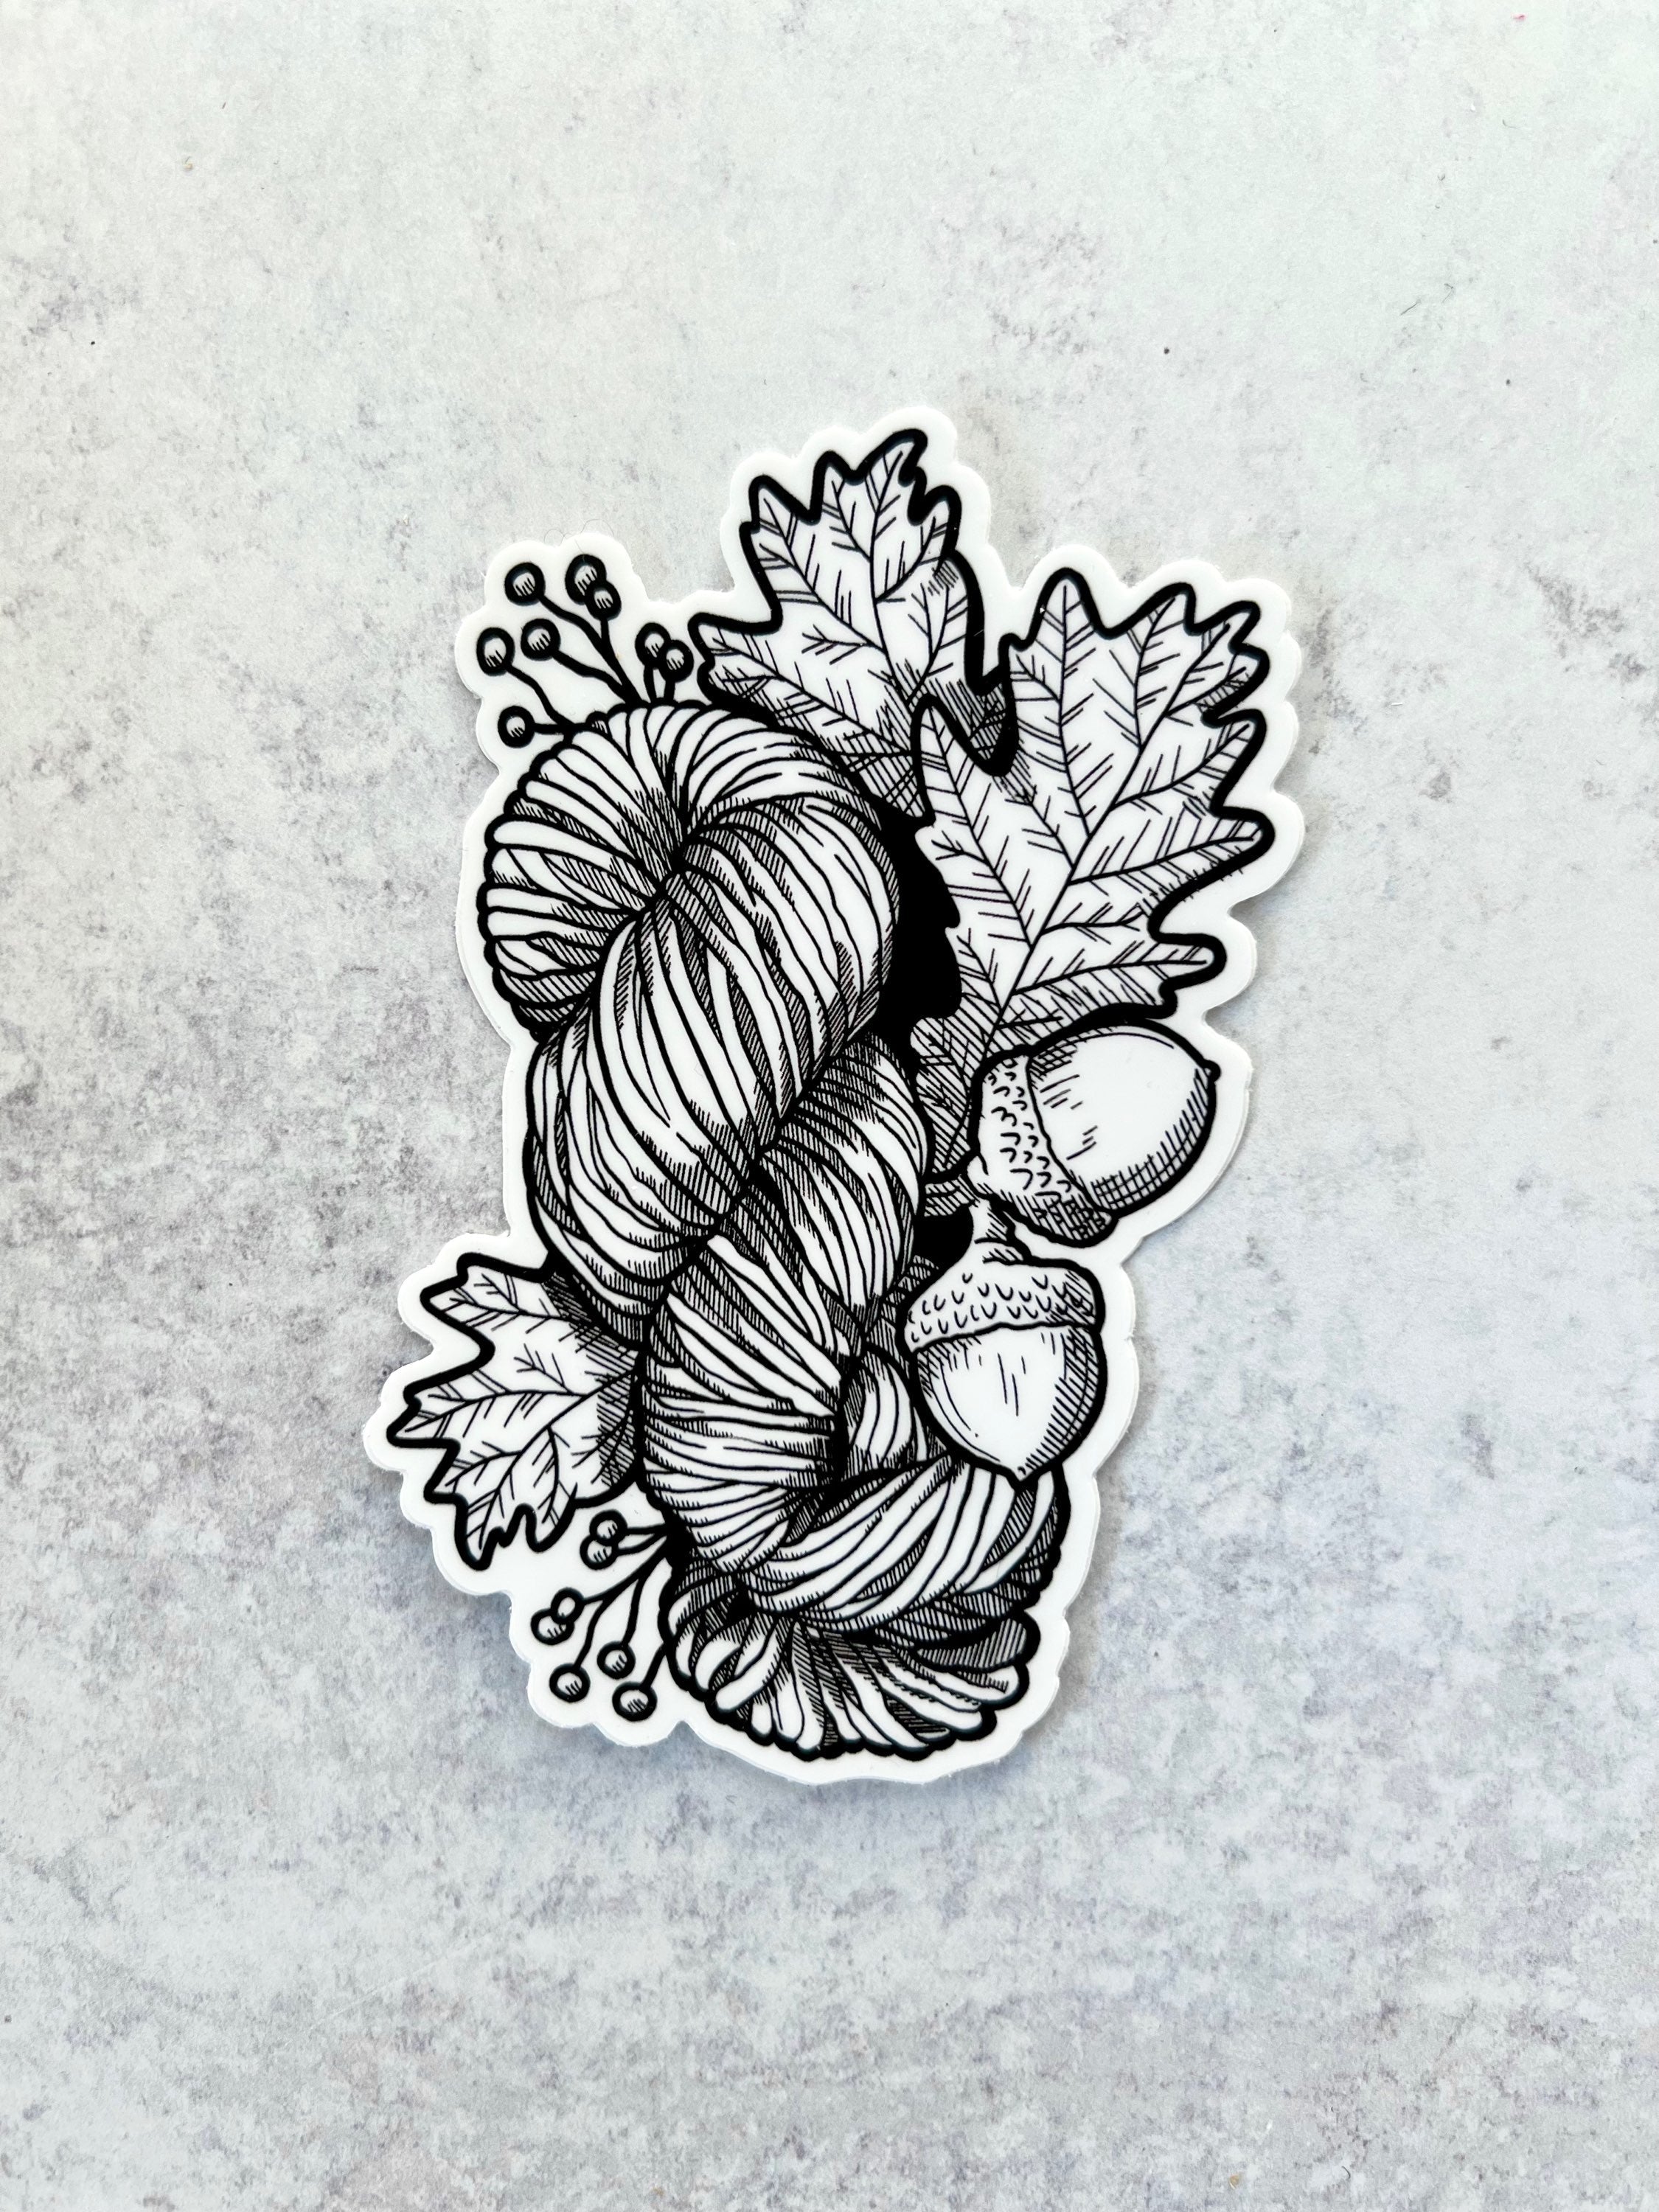 Sticker - Yarn Skein & Oak Leaves